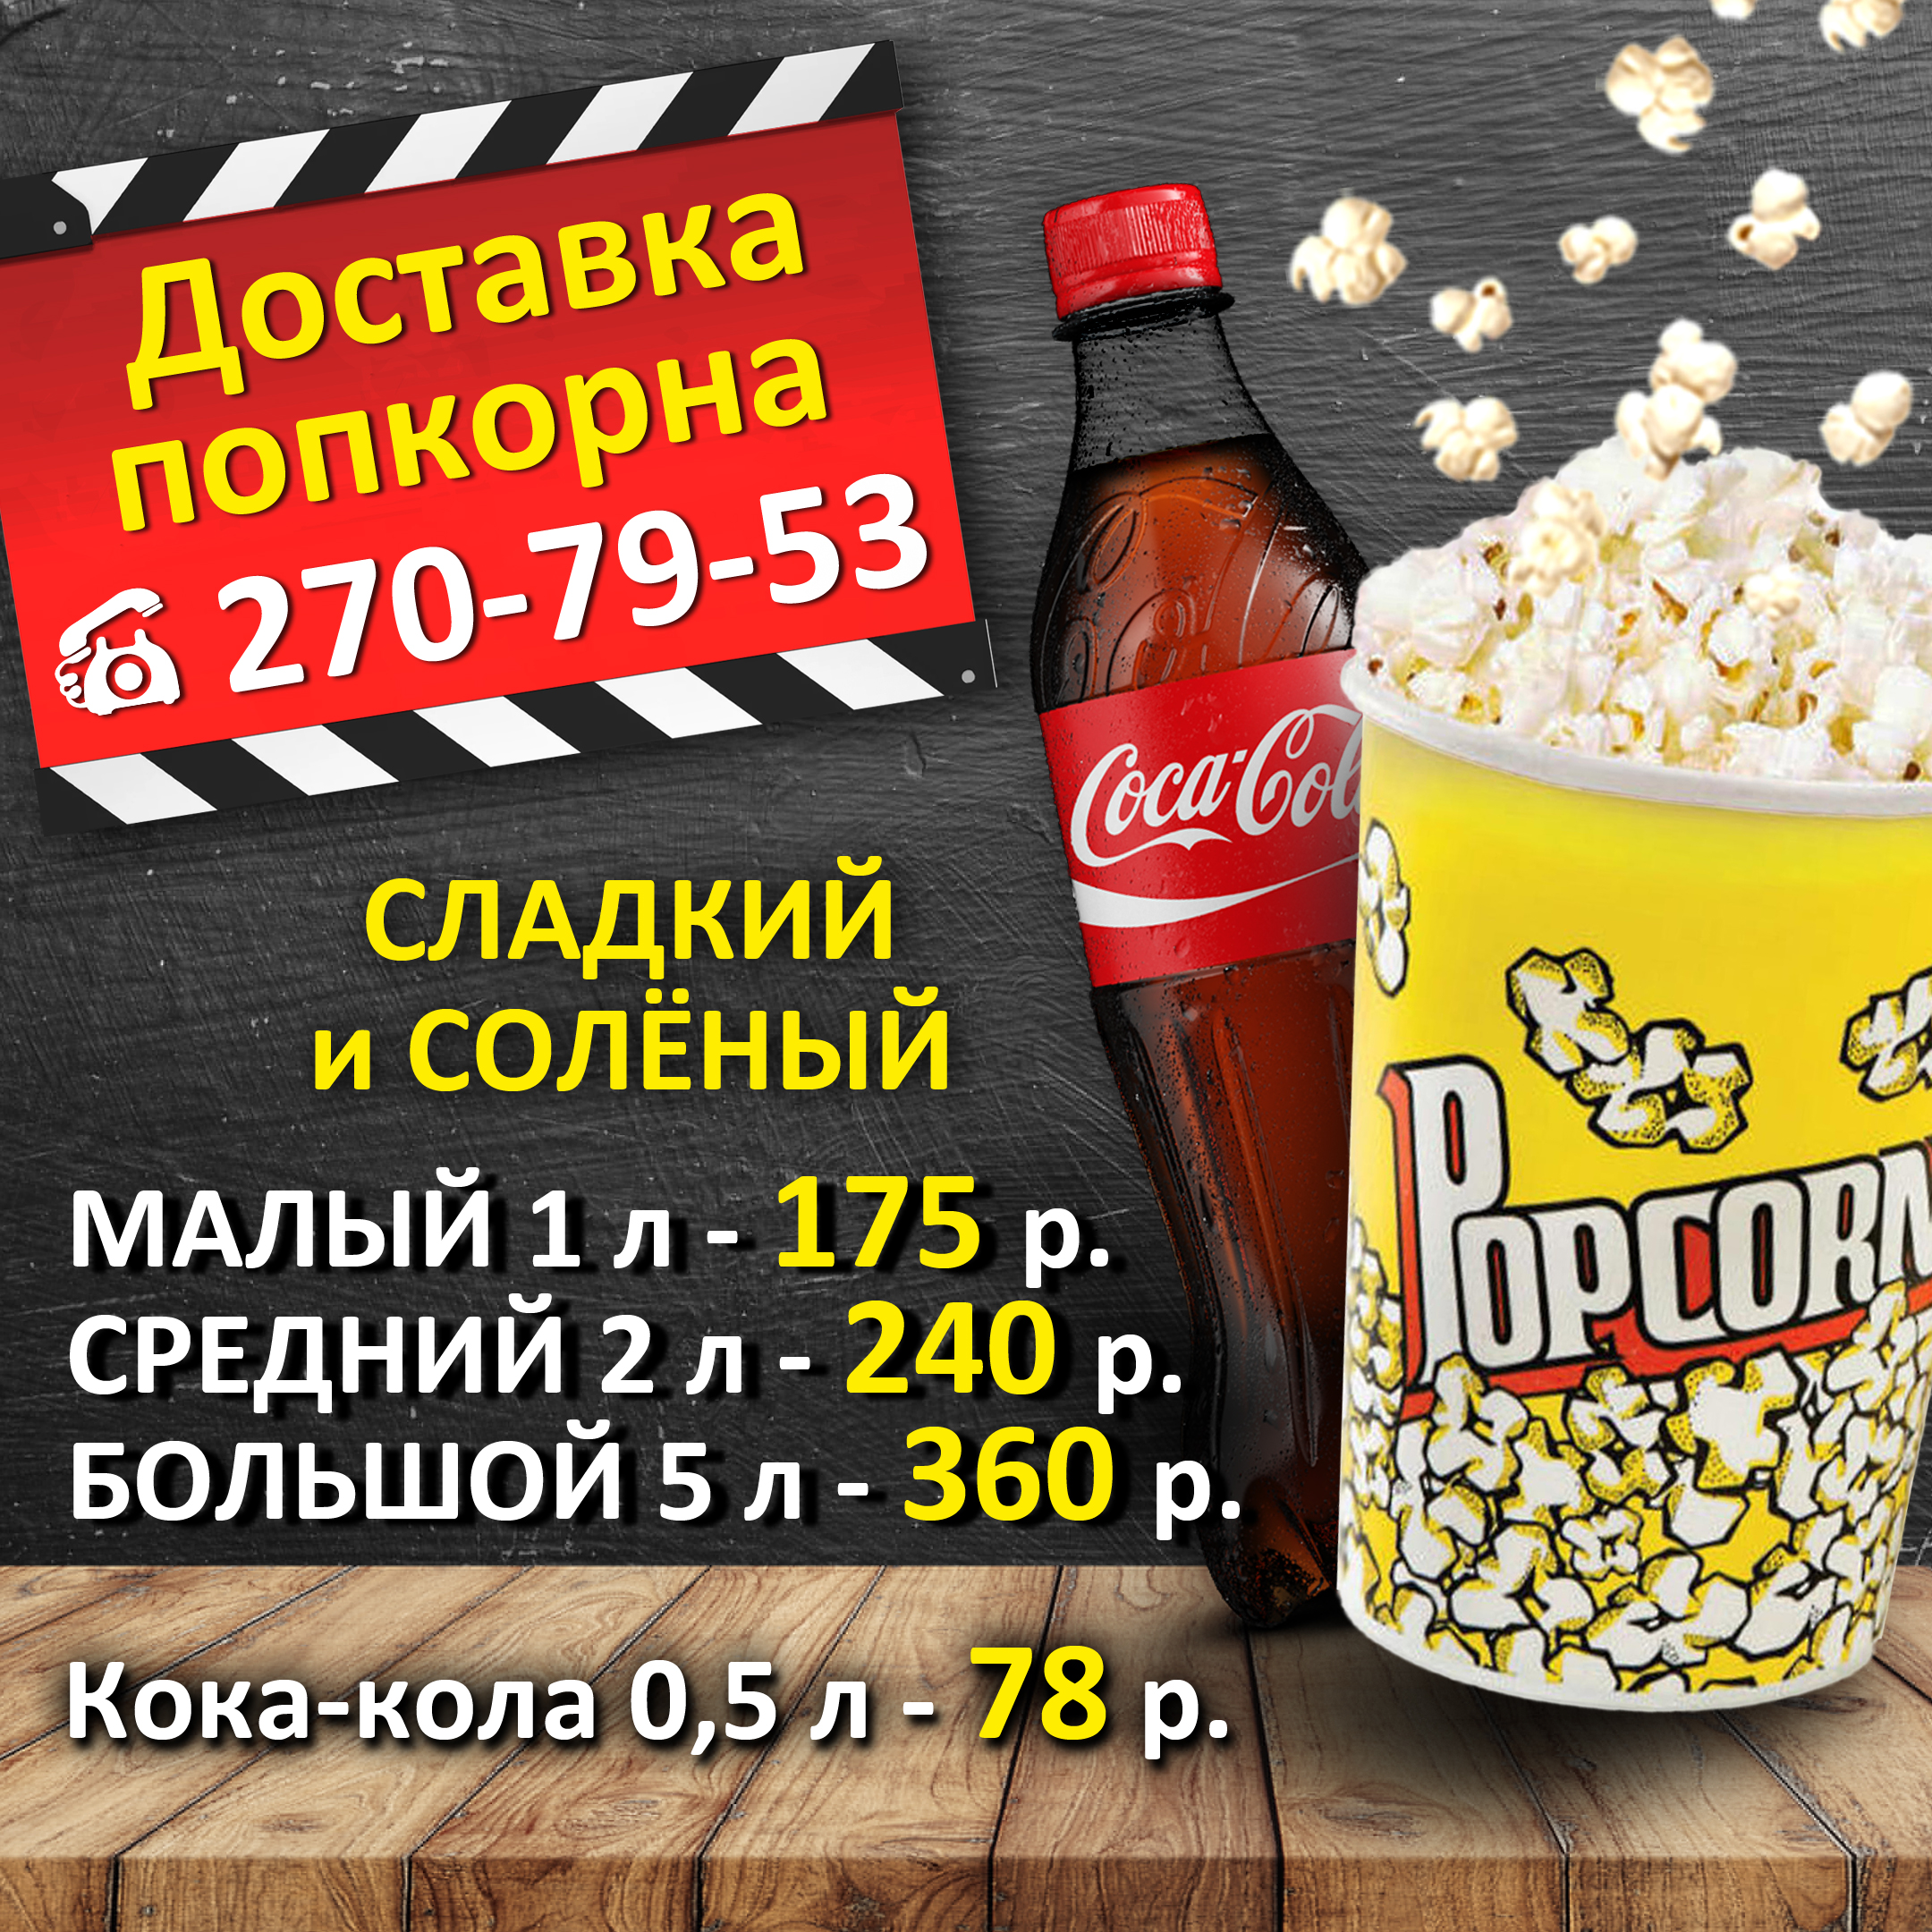 Кинотеатр луч красноярск цены расписание сеансов